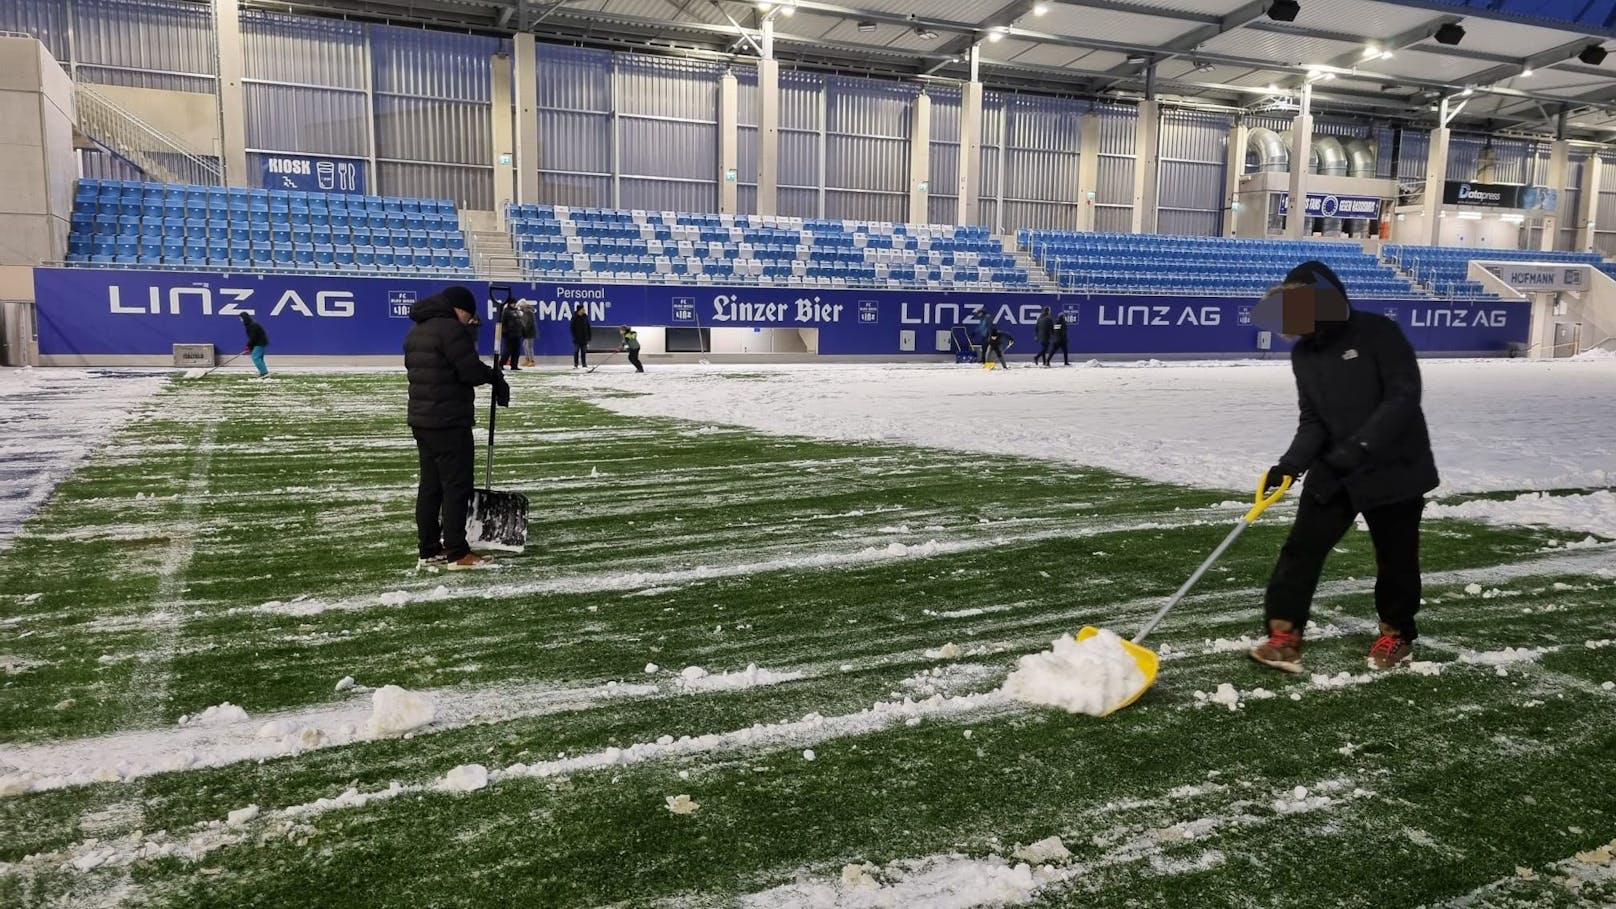 Zittern um Match – Fußballfans räumen Schnee vom Rasen